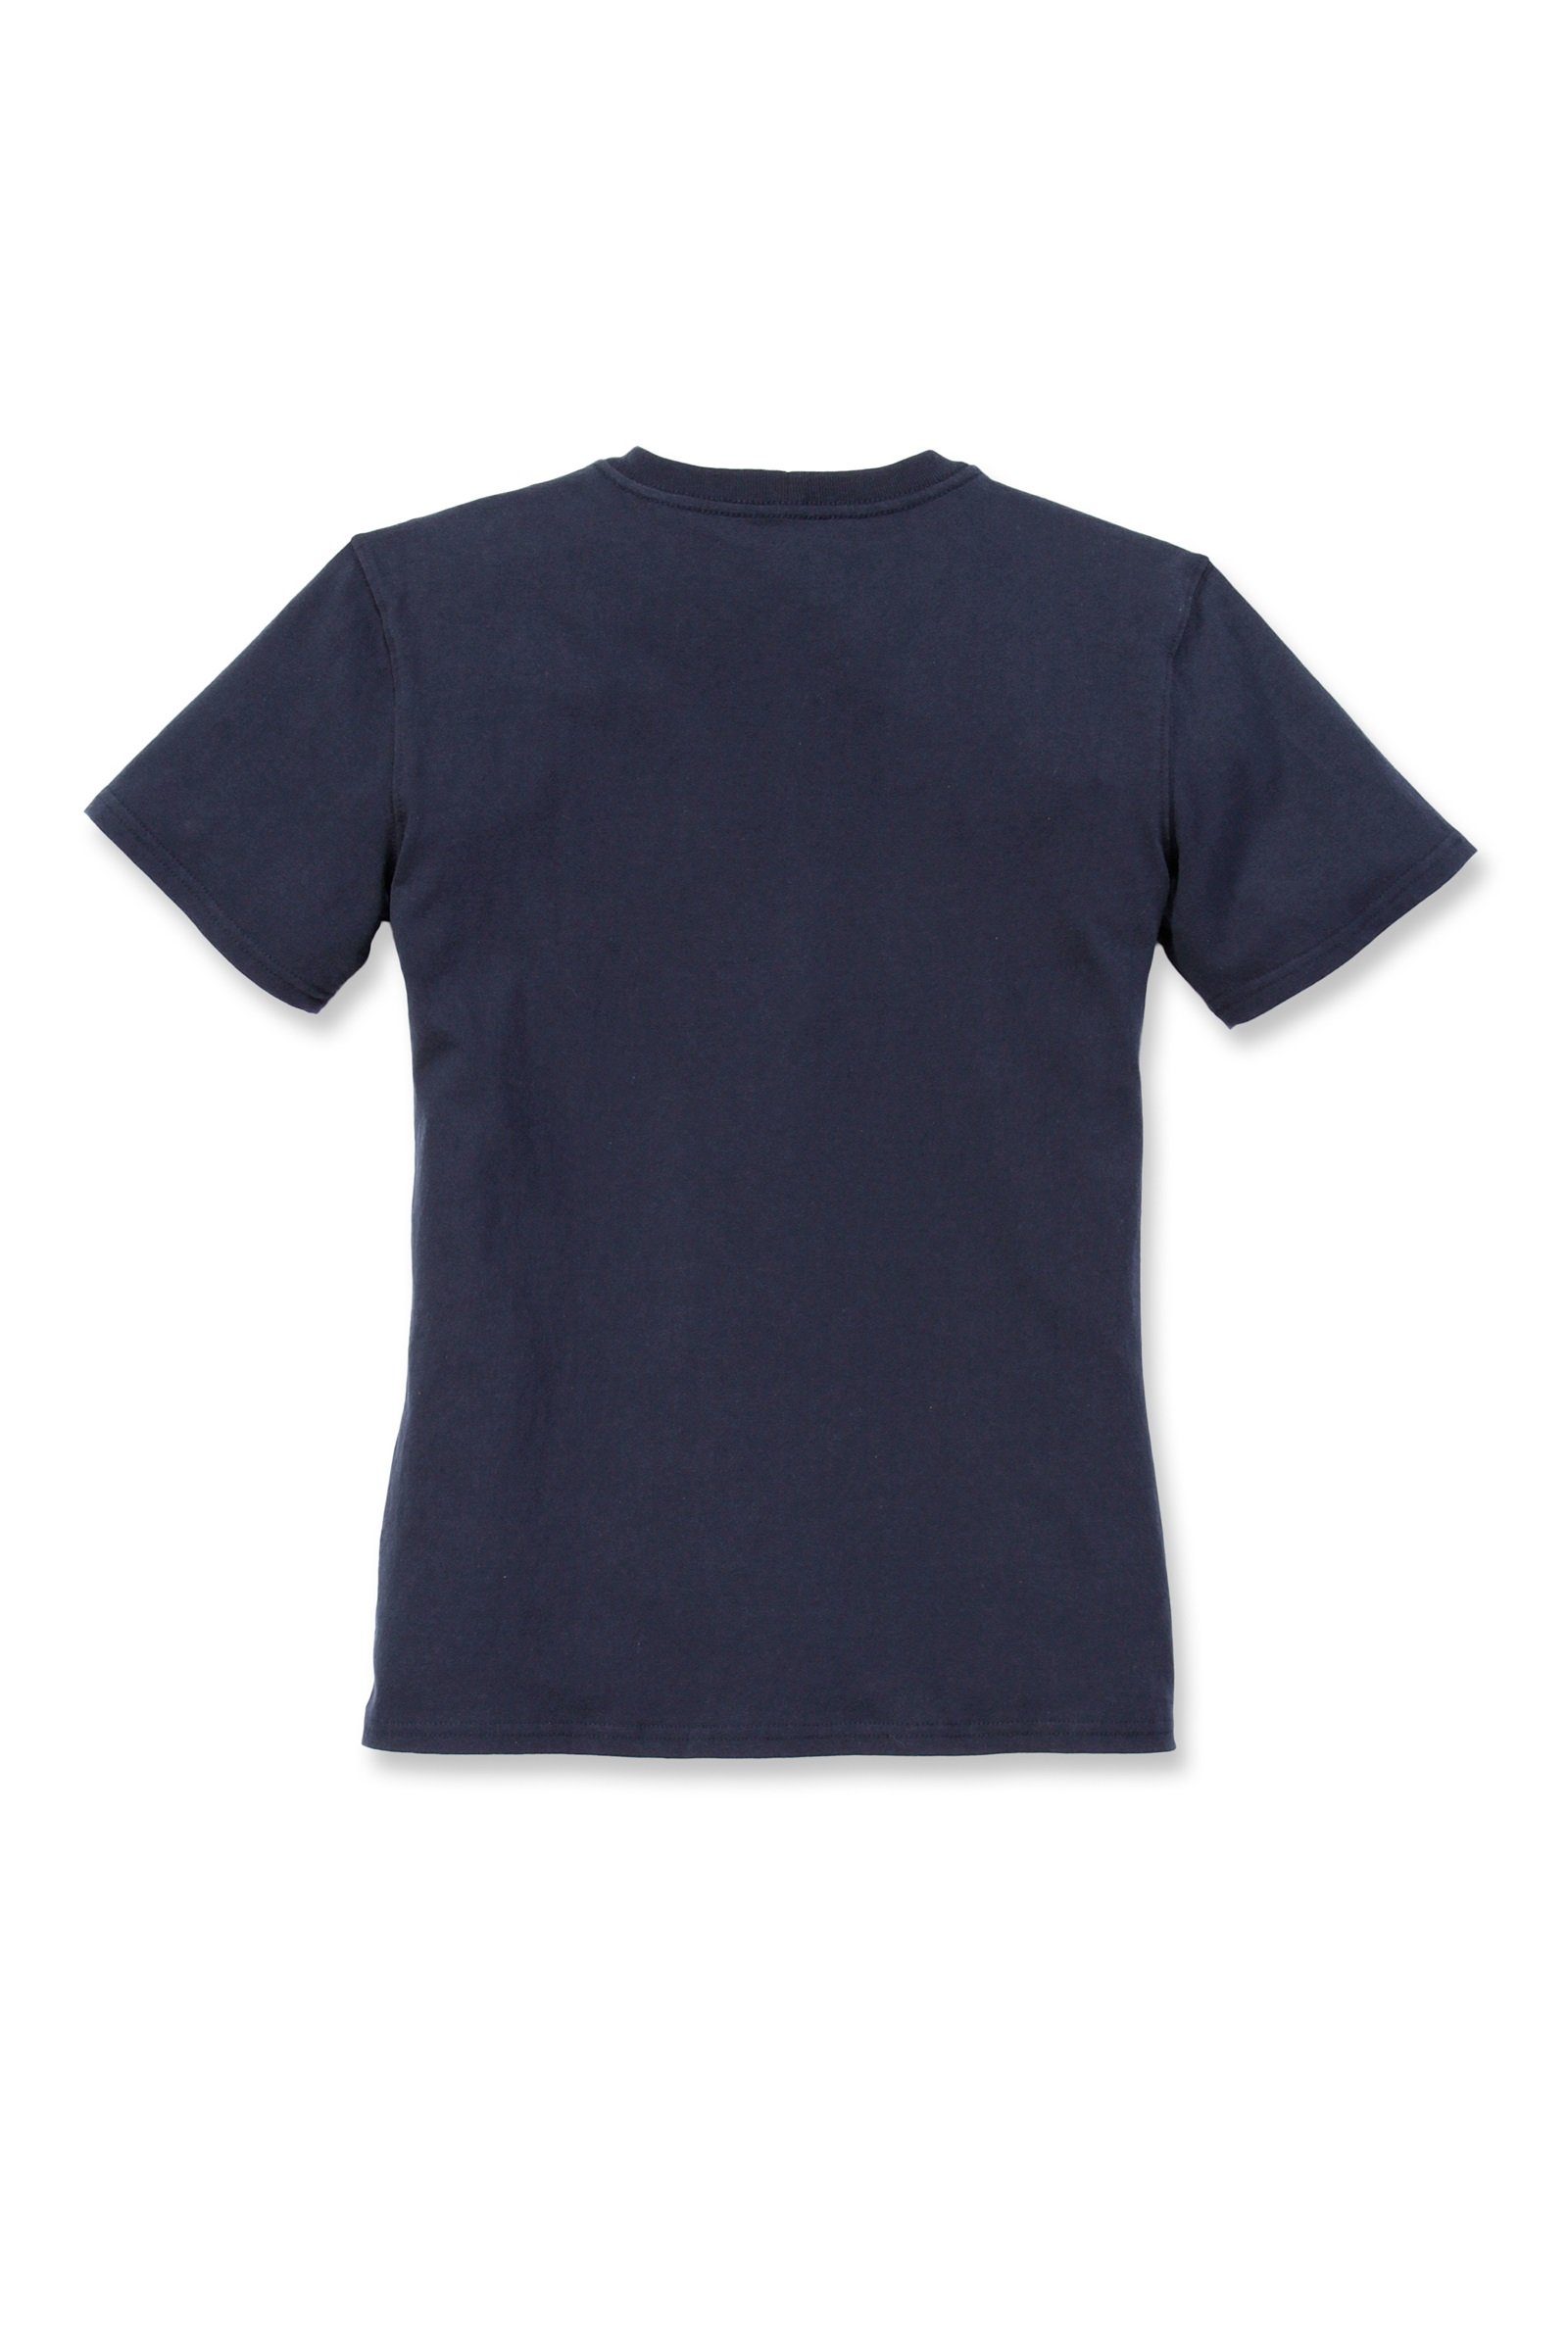 Carhartt T-Shirt Carhartt Damen T-Shirt Adult Pocket Loose Heavyweight navy Fit Short-Sleeve